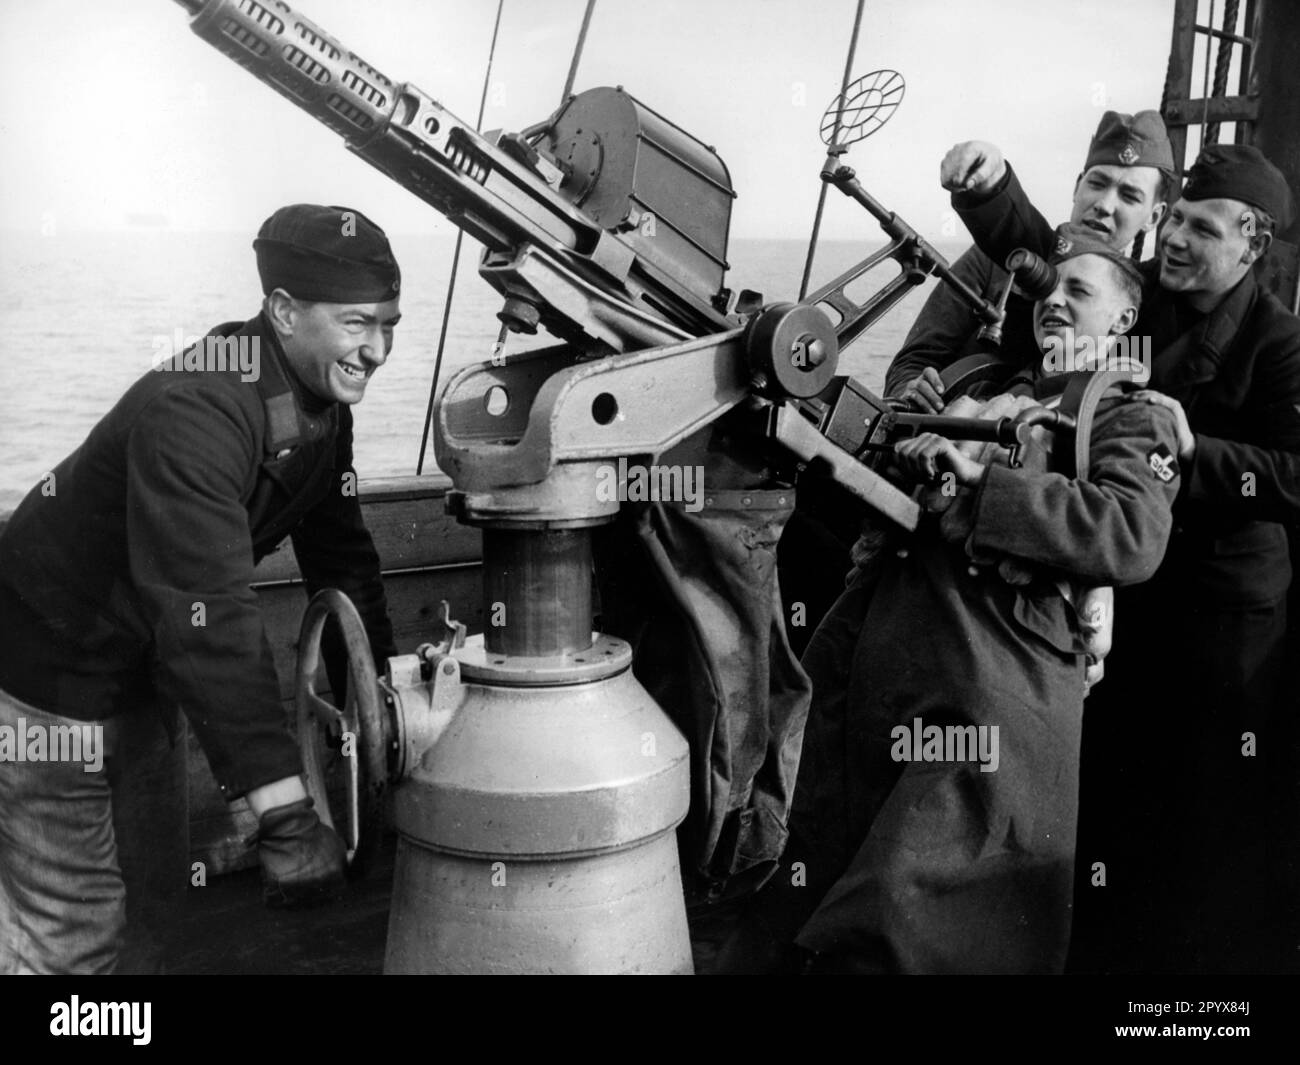 Jeune membre du Reich Labor Service traversant l'une des îles de la Manche. Lors du passage à niveau sur un navire Kriegsmarine, la manipulation d'un pistolet Klak est illustrée. Photo: Schwahn. [traduction automatique] Banque D'Images